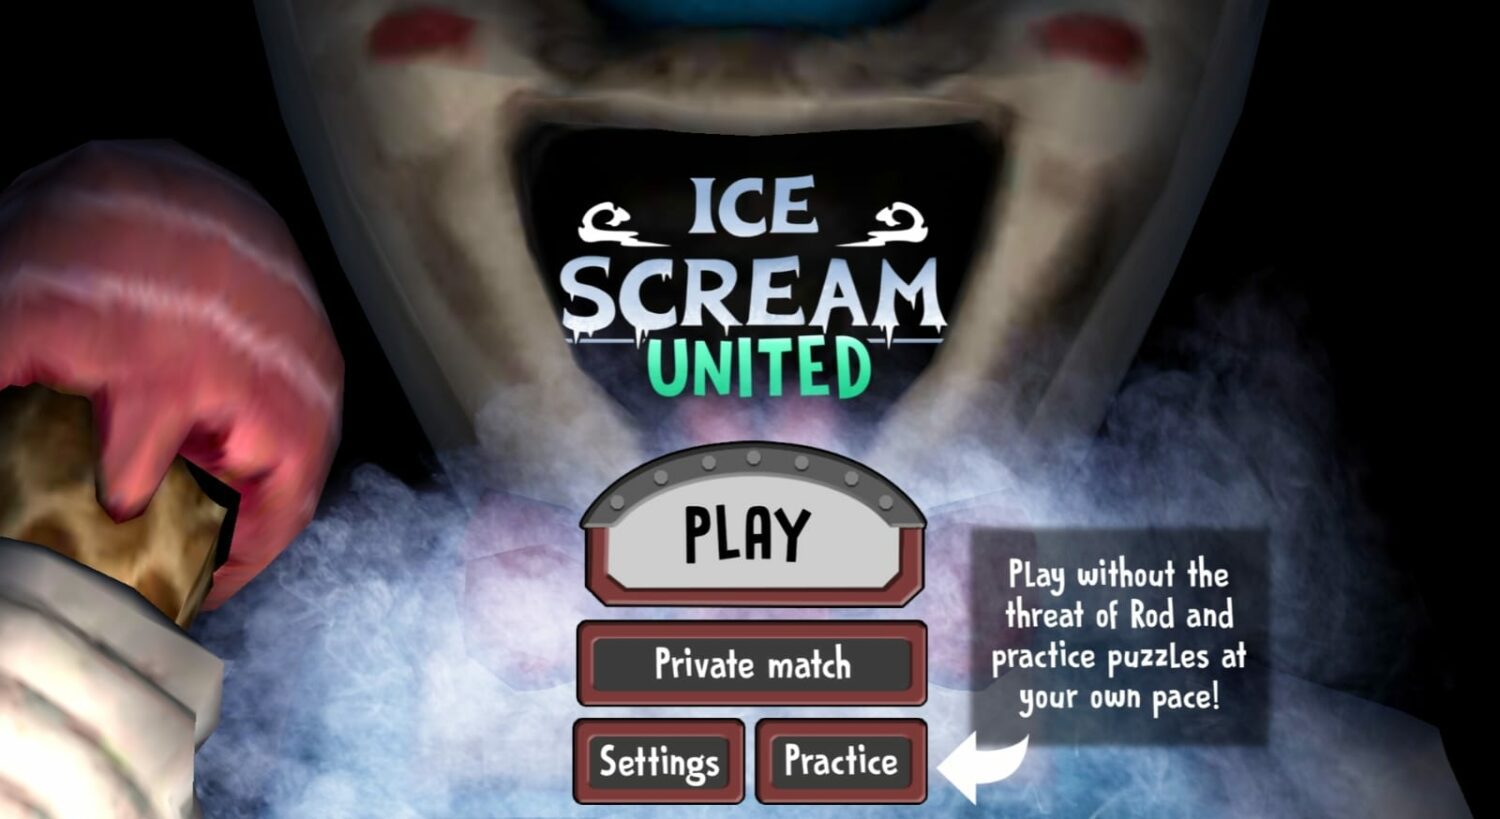 Ice Scream United modes